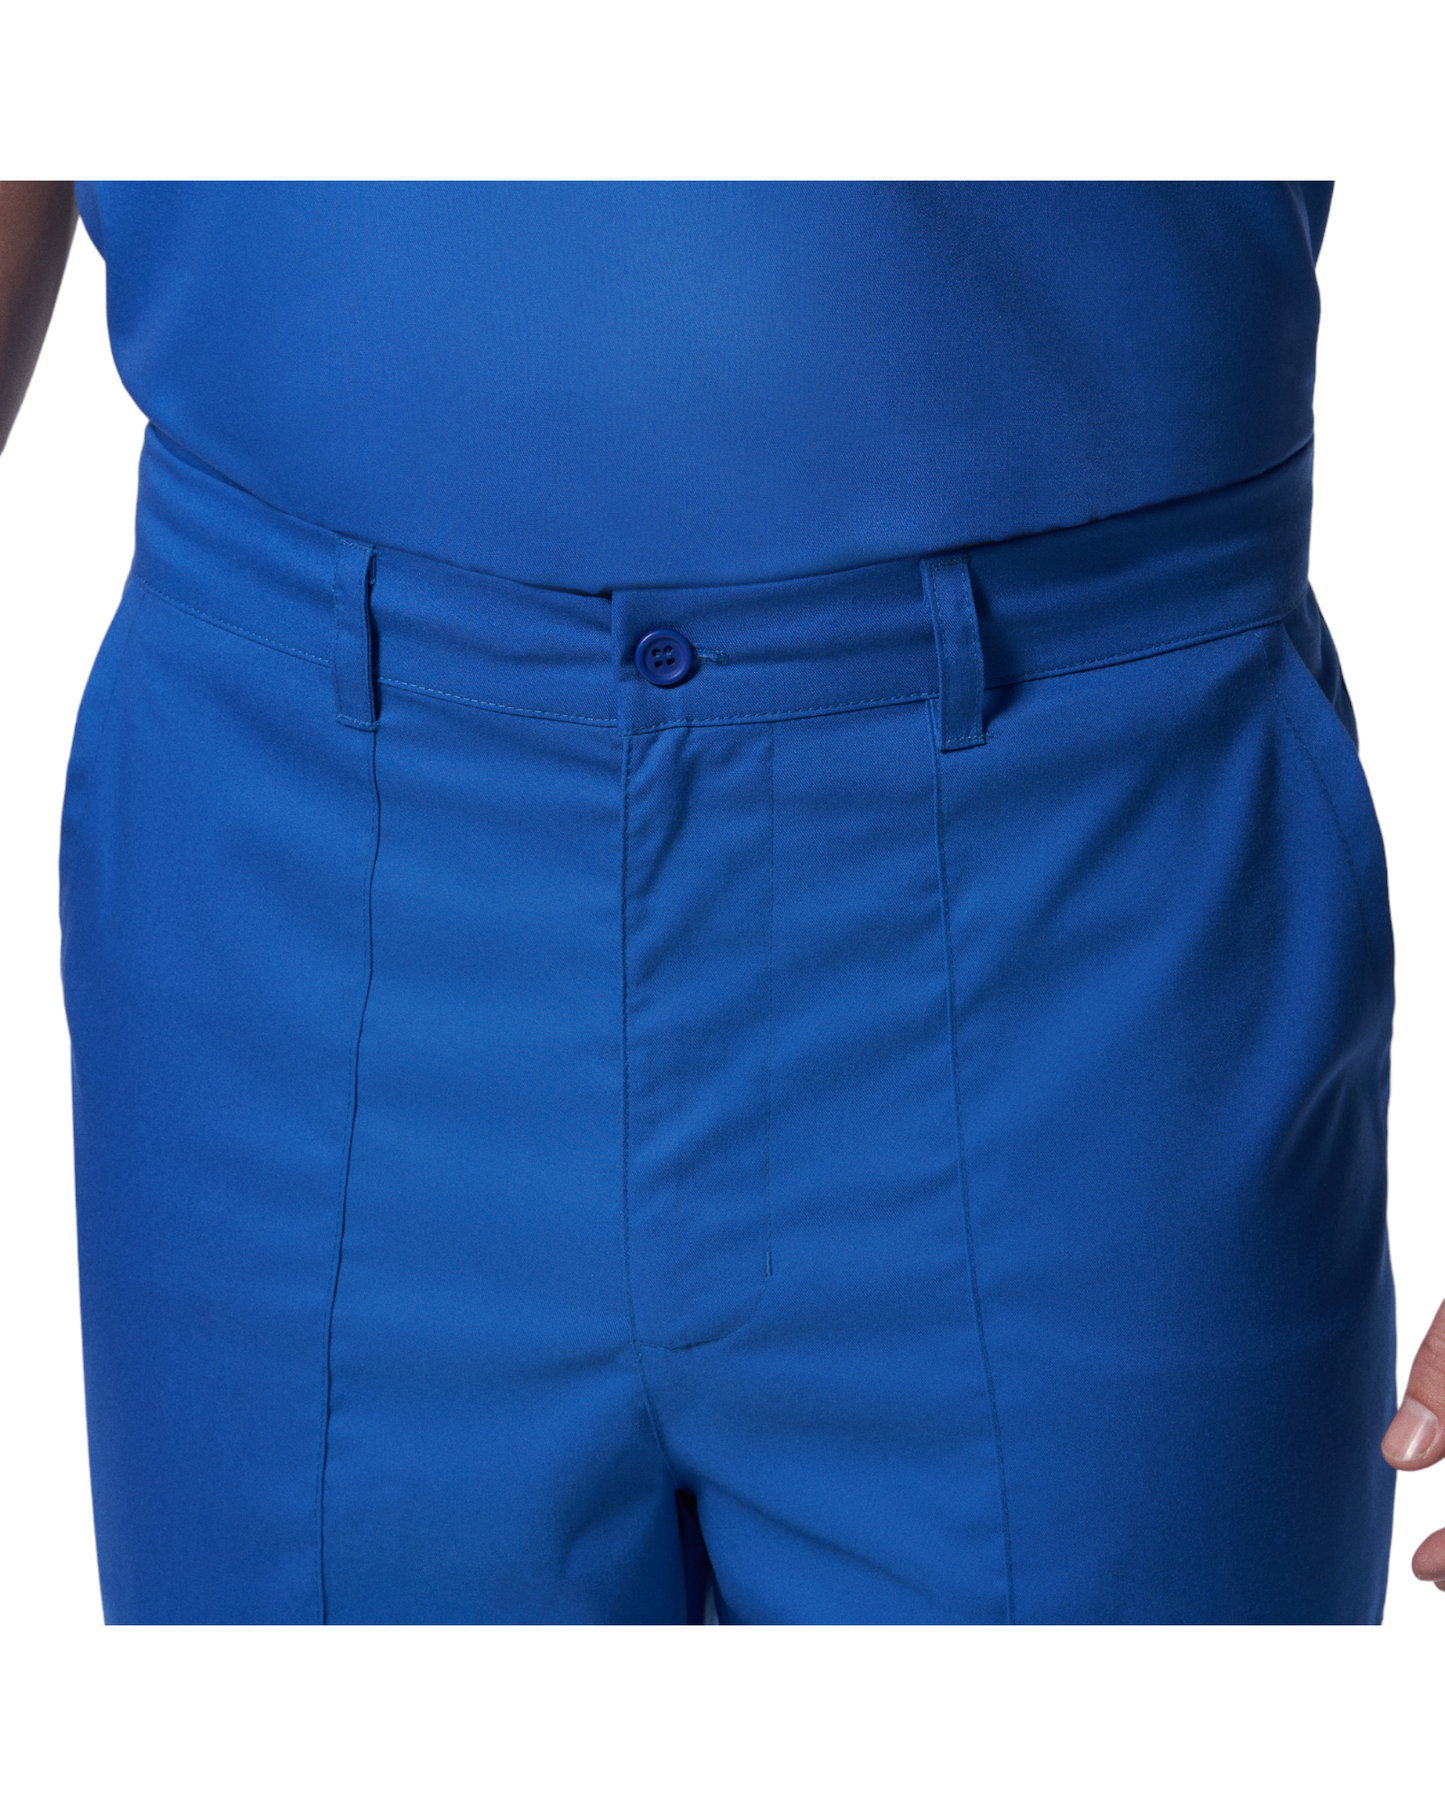 Vue de la taille du pantalon jogger pour hommes Landau Proflex #LB408 OS .